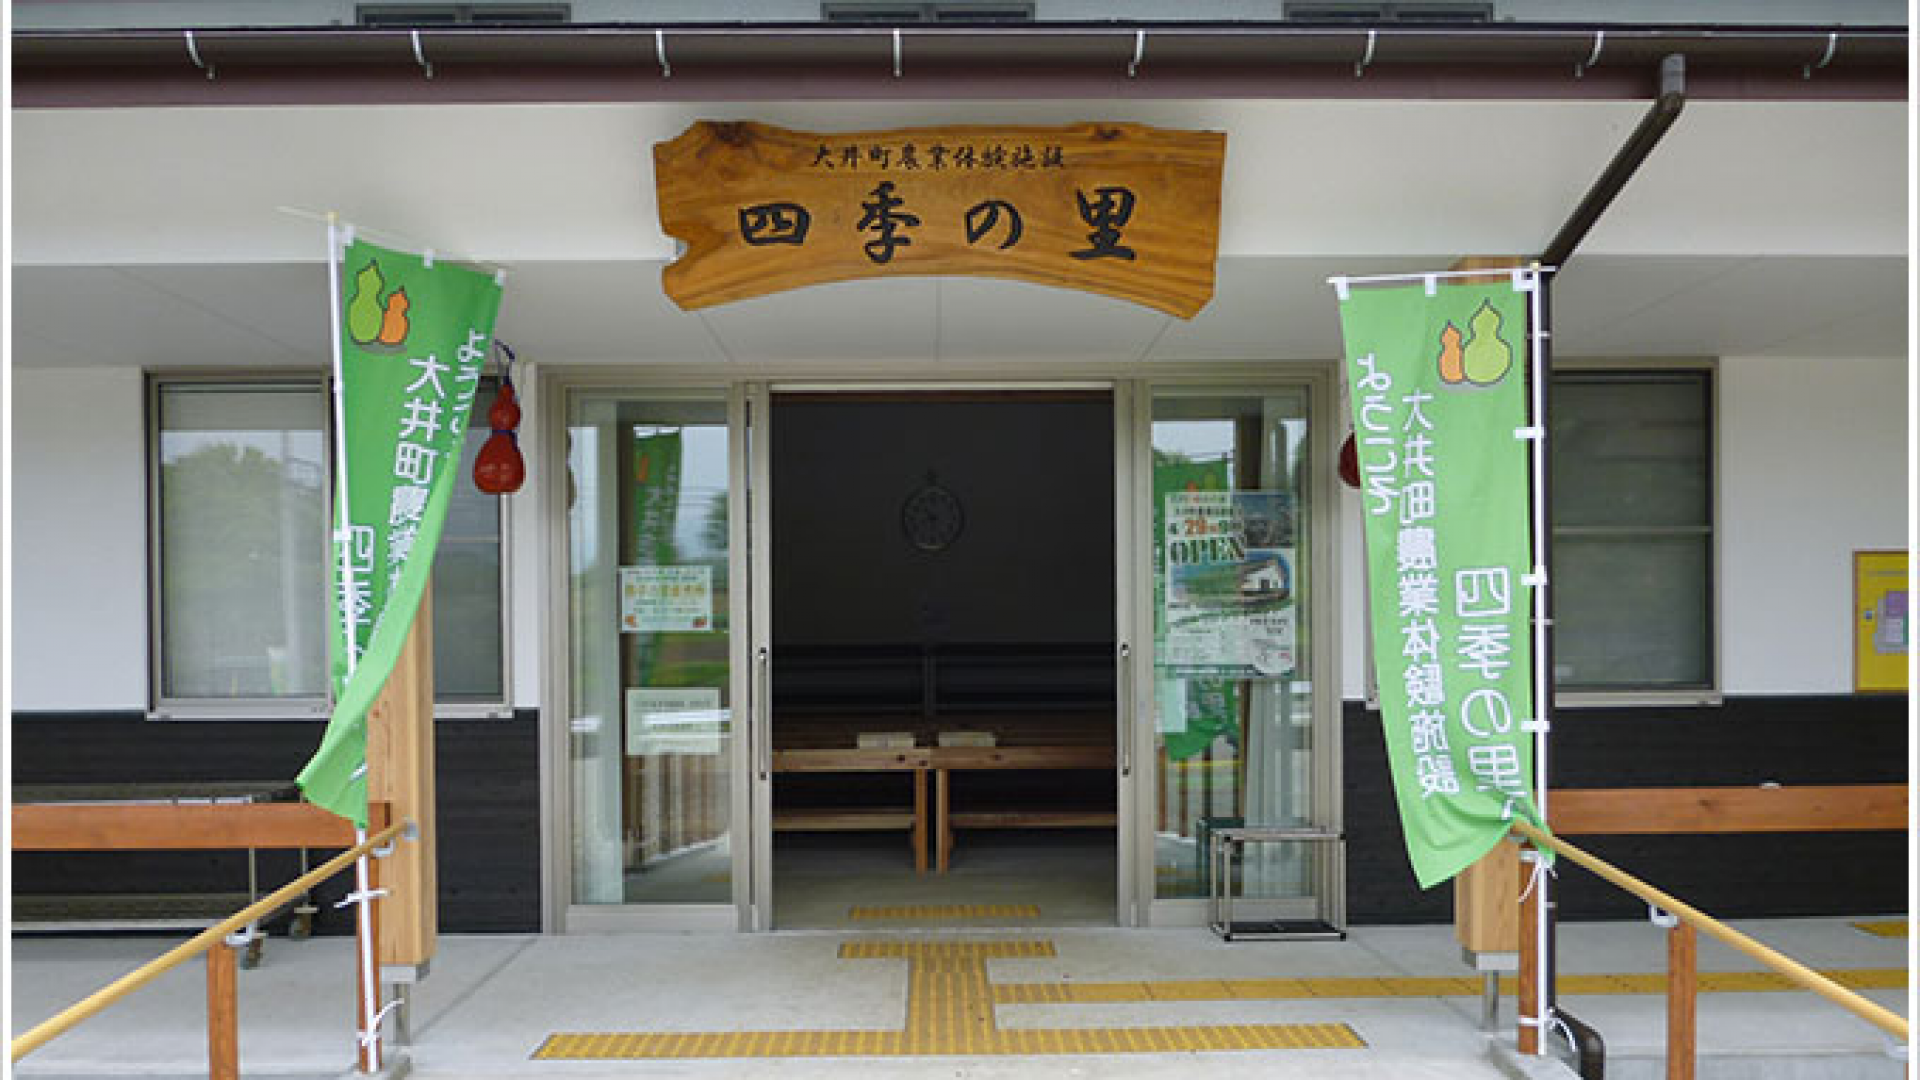 시키노사토 - 오이 농업 체험 시설